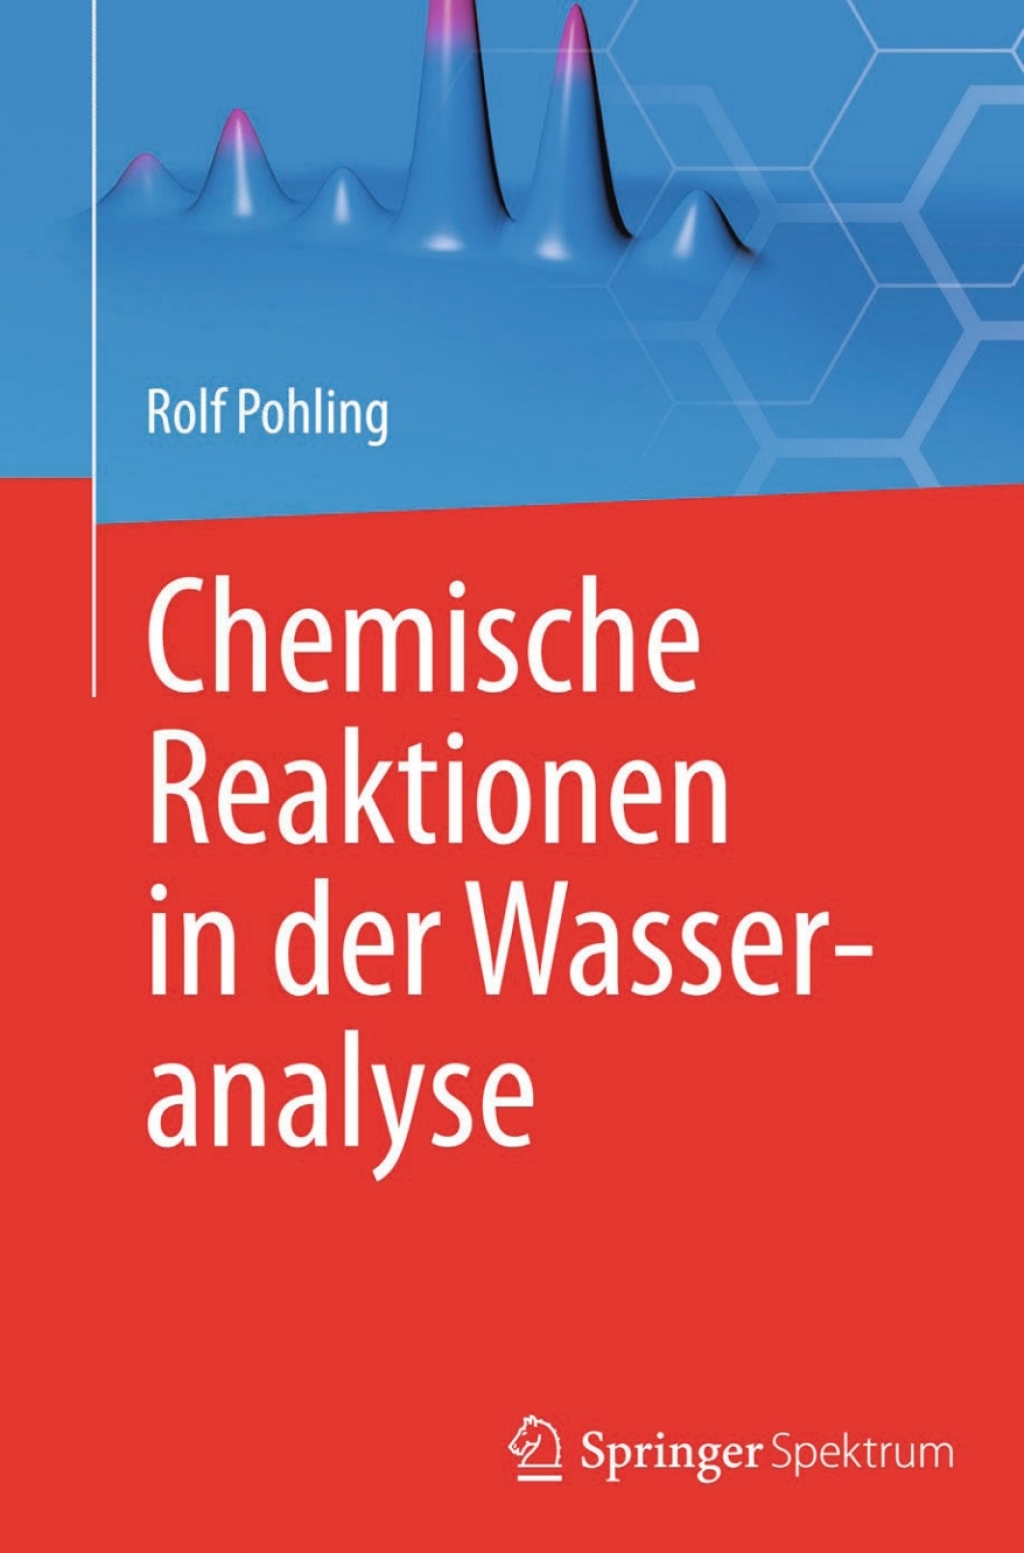 Chemische Reaktionen in der Wasseranalyse (eBook) - Rolf Pohling,